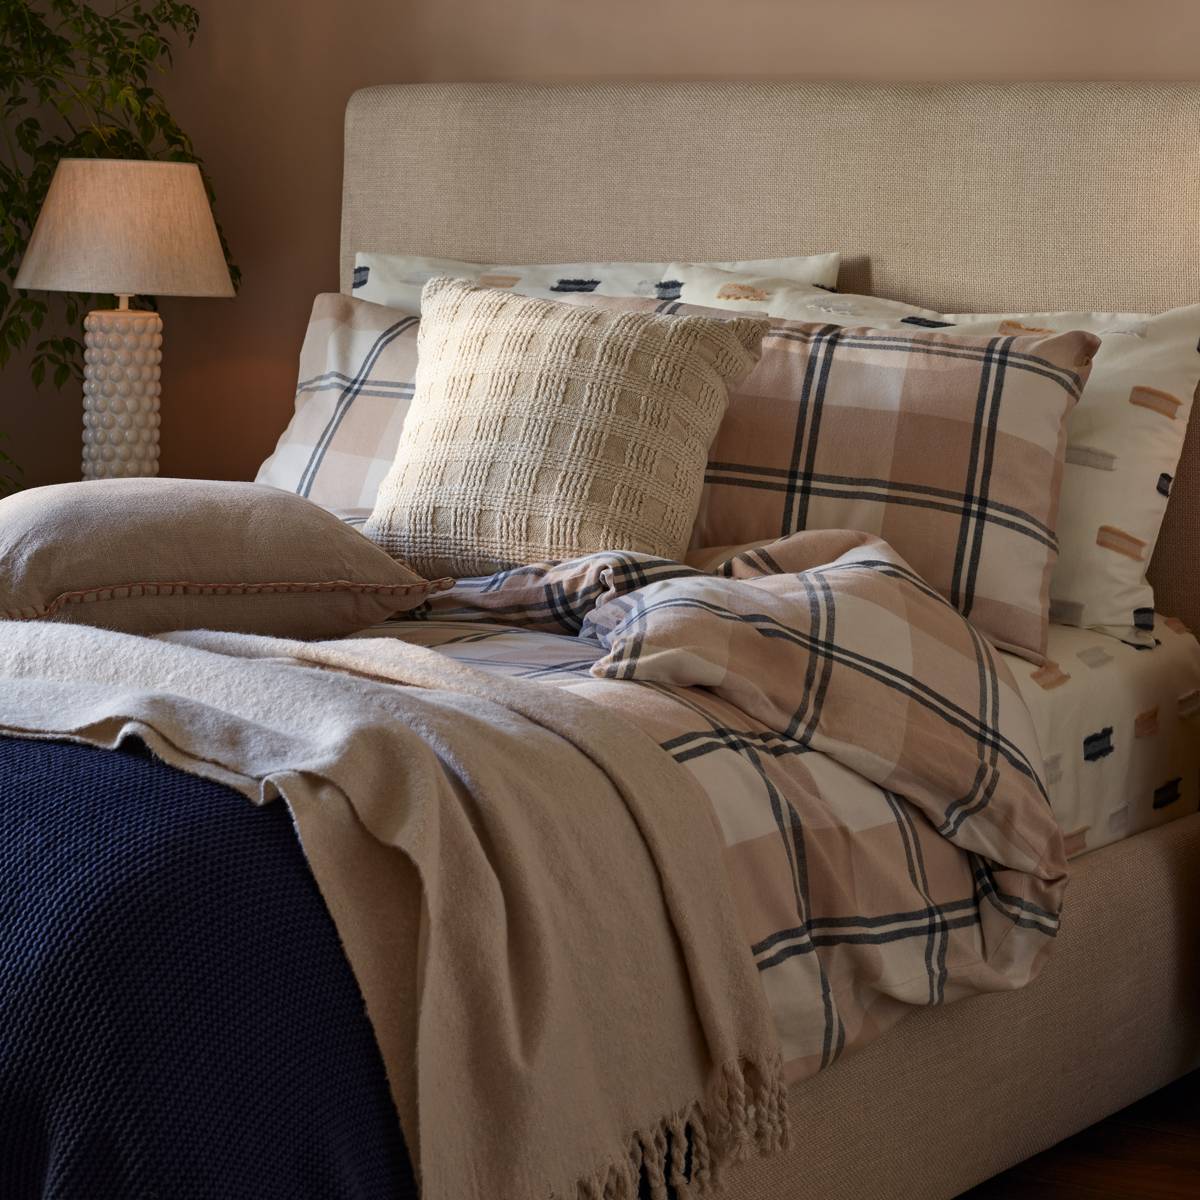 Bett mit Bettwäsche mit Muster, in neutralen Farben und Marineblau